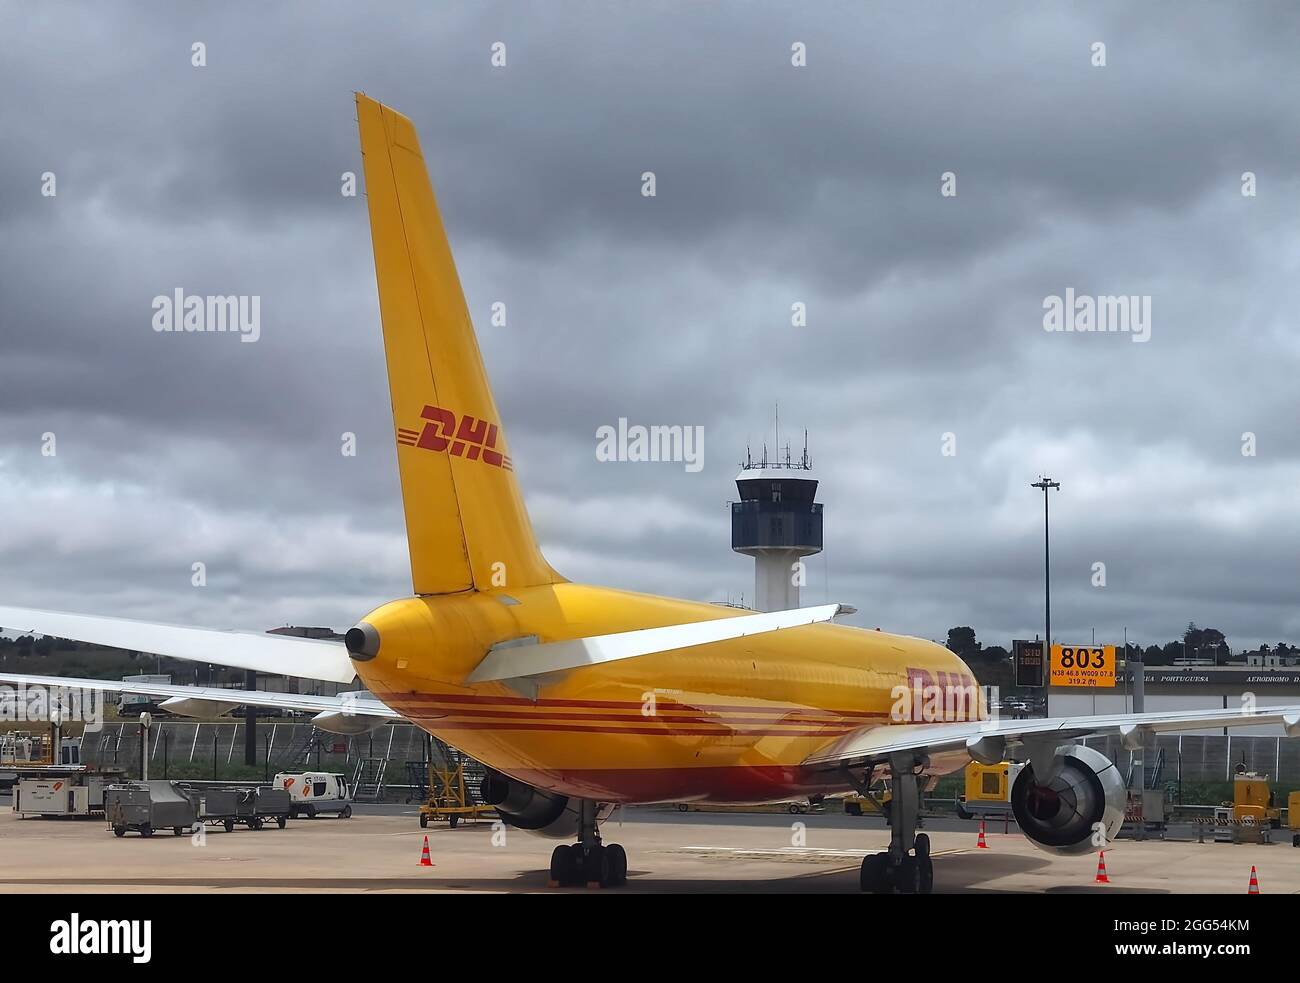 Aereo giallo DHL in aeroporto Foto Stock